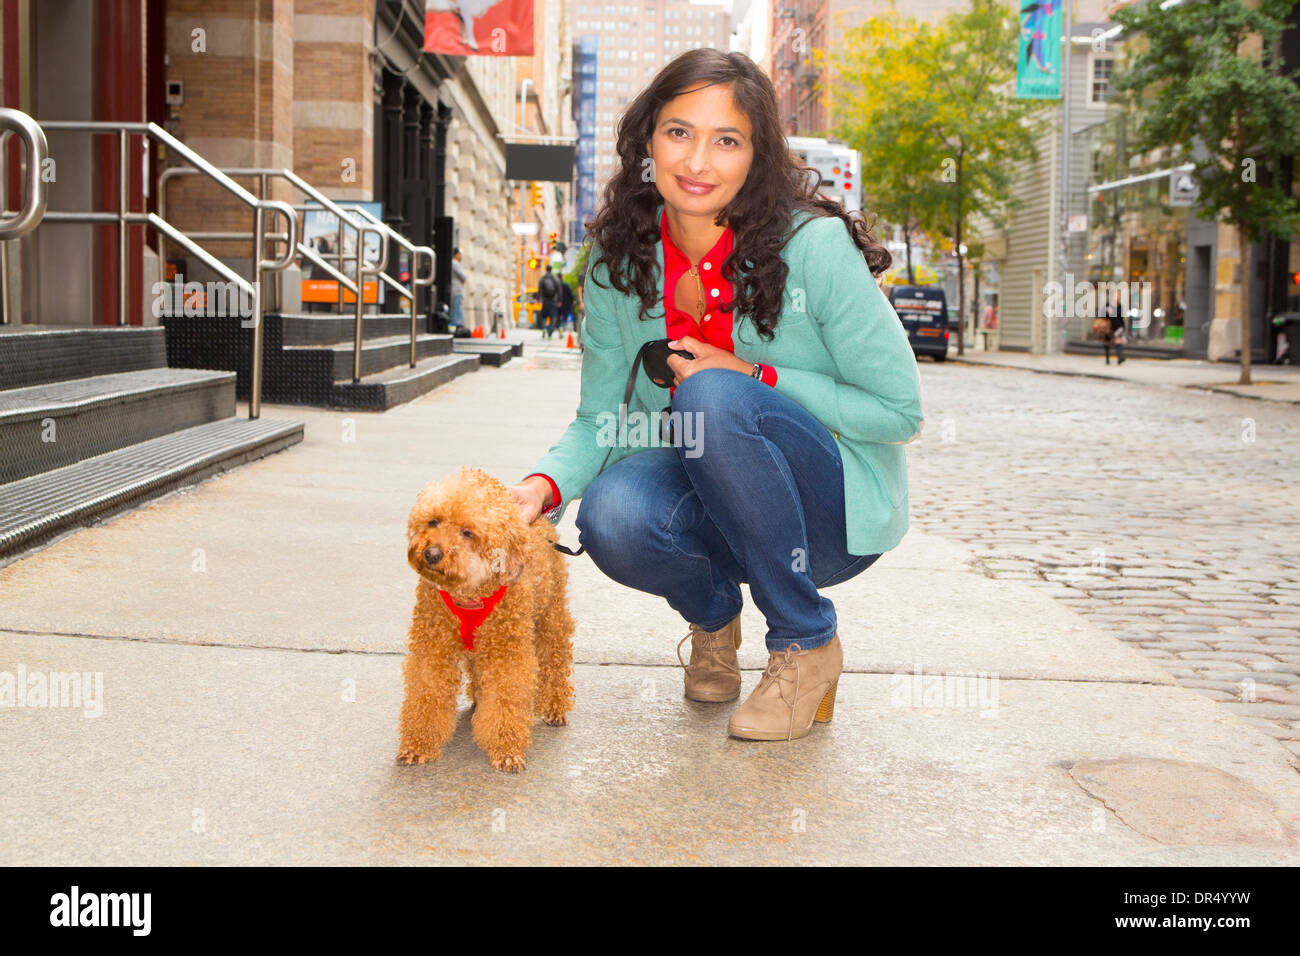 Mixed Race woman walking dog sur trottoir urbain Banque D'Images